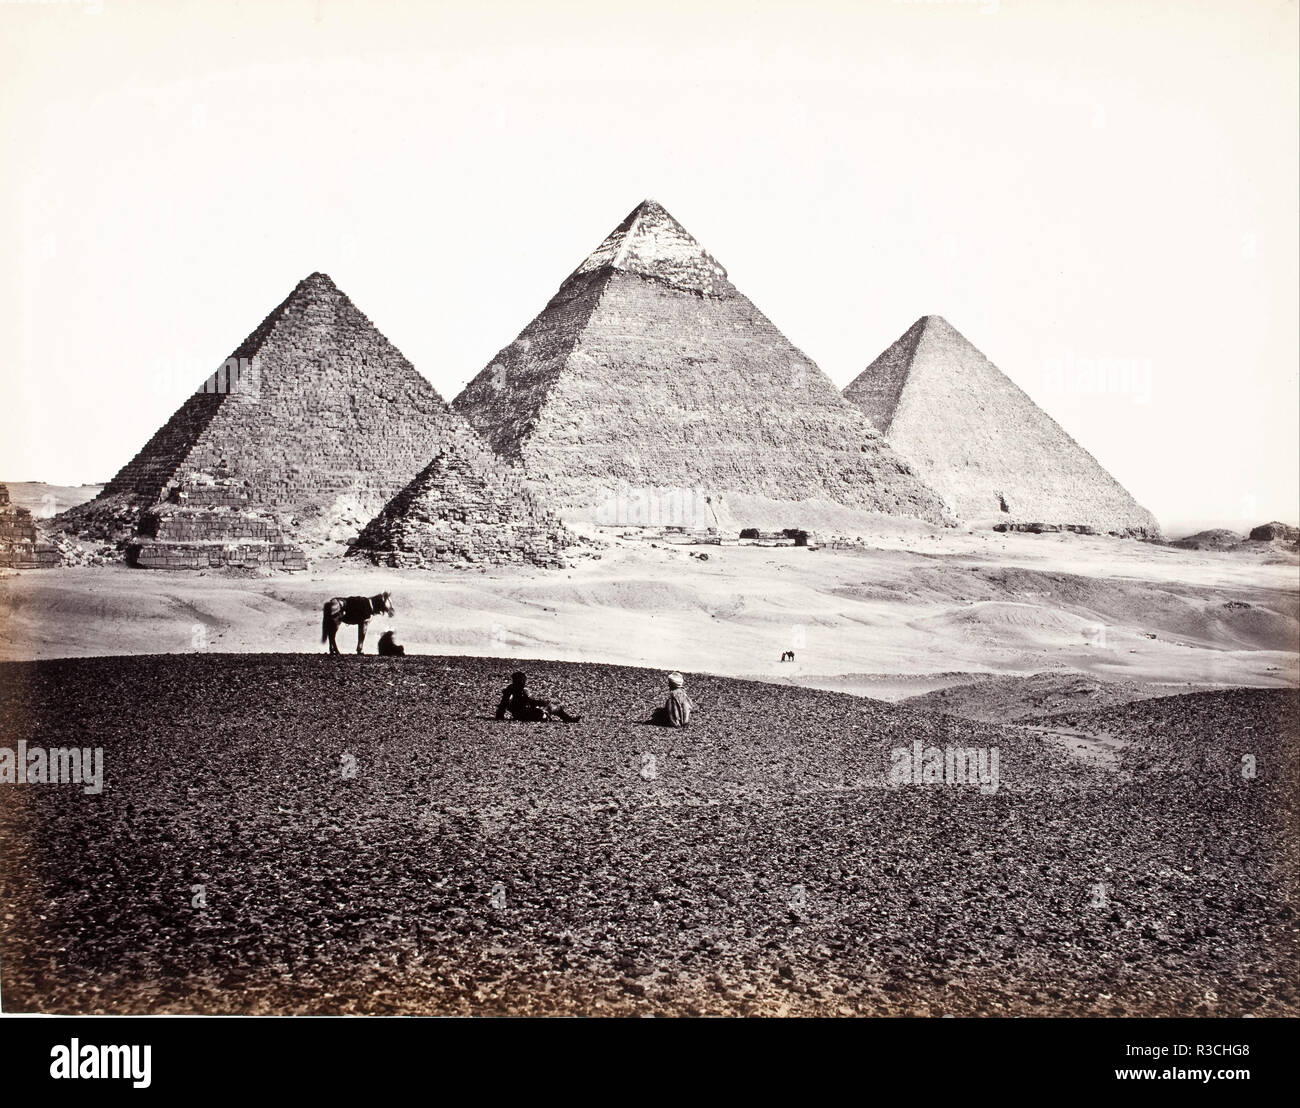 Pyramiden von El-Geezeh (Aus dem Südwesten). Datum/Zeitraum: 1857 Ca., Gedruckt 1865 Ca. Foto. Eiweiß drucken. Höhe: 381 mm (15 in); Breite: 488.90 mm (19.24 in). Autor: Francis Frith. Stockfoto